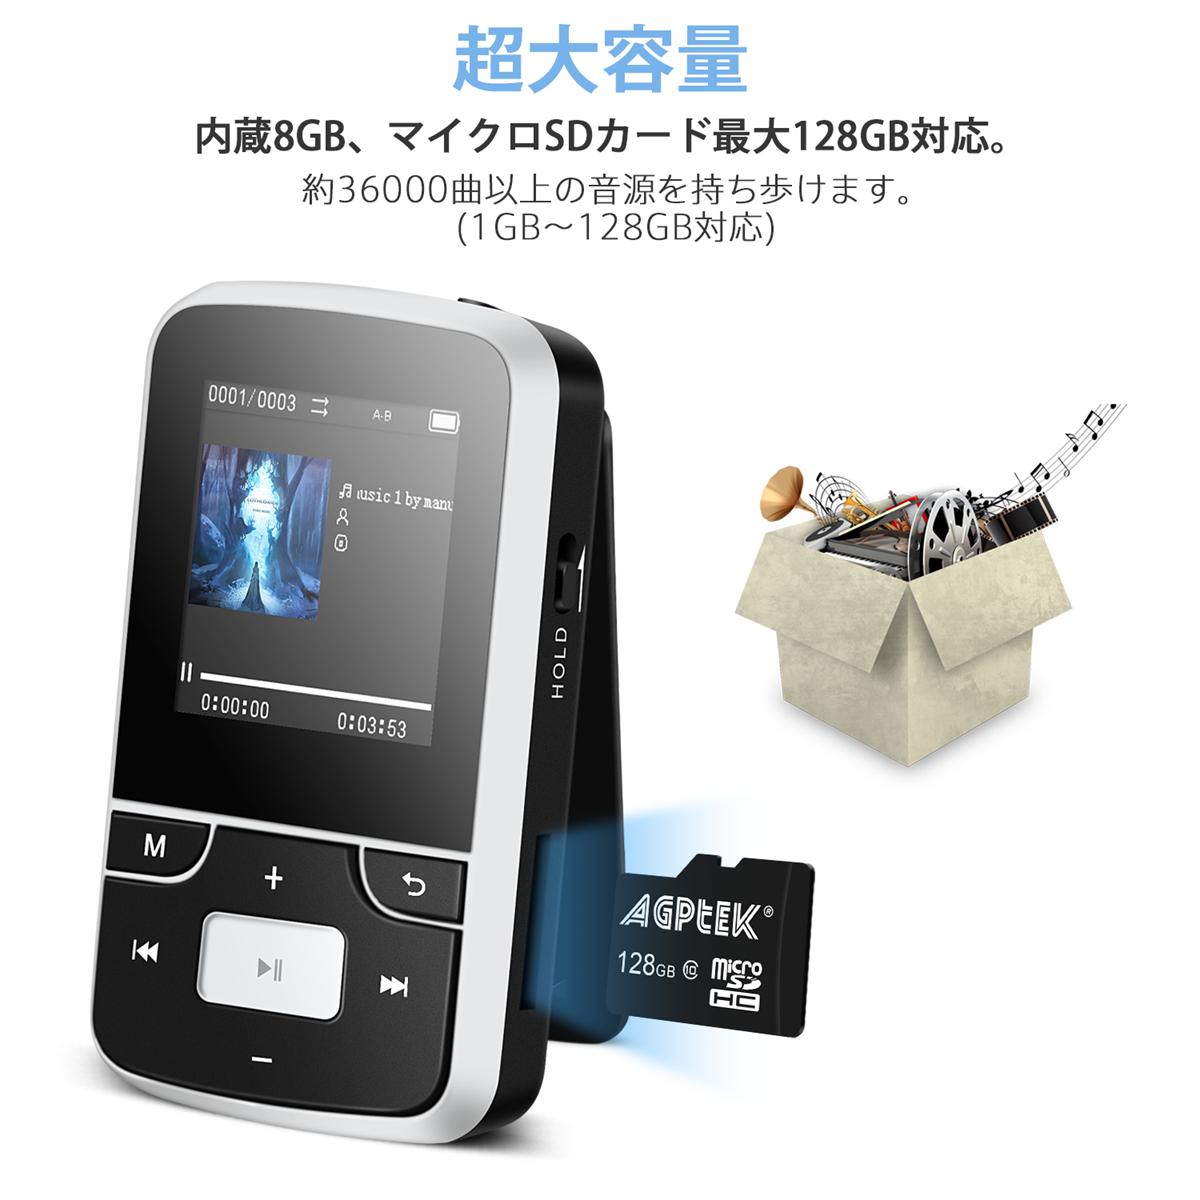 楽天市場 送料無料 Agptek Bluetooth 搭載 クリップ Mp3プレーヤー